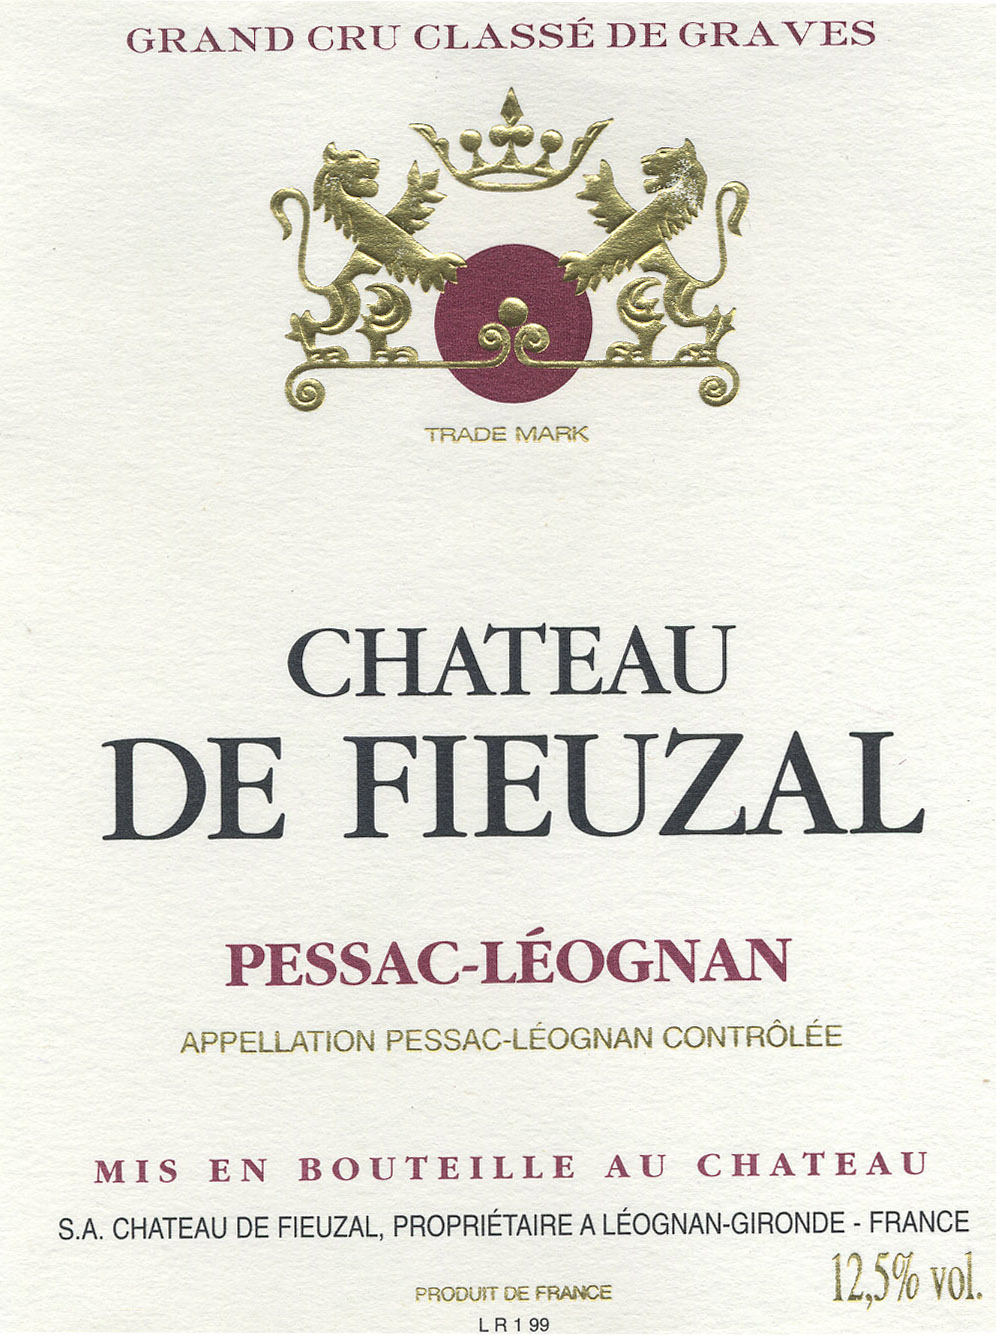 Chateau De Fieuzal label